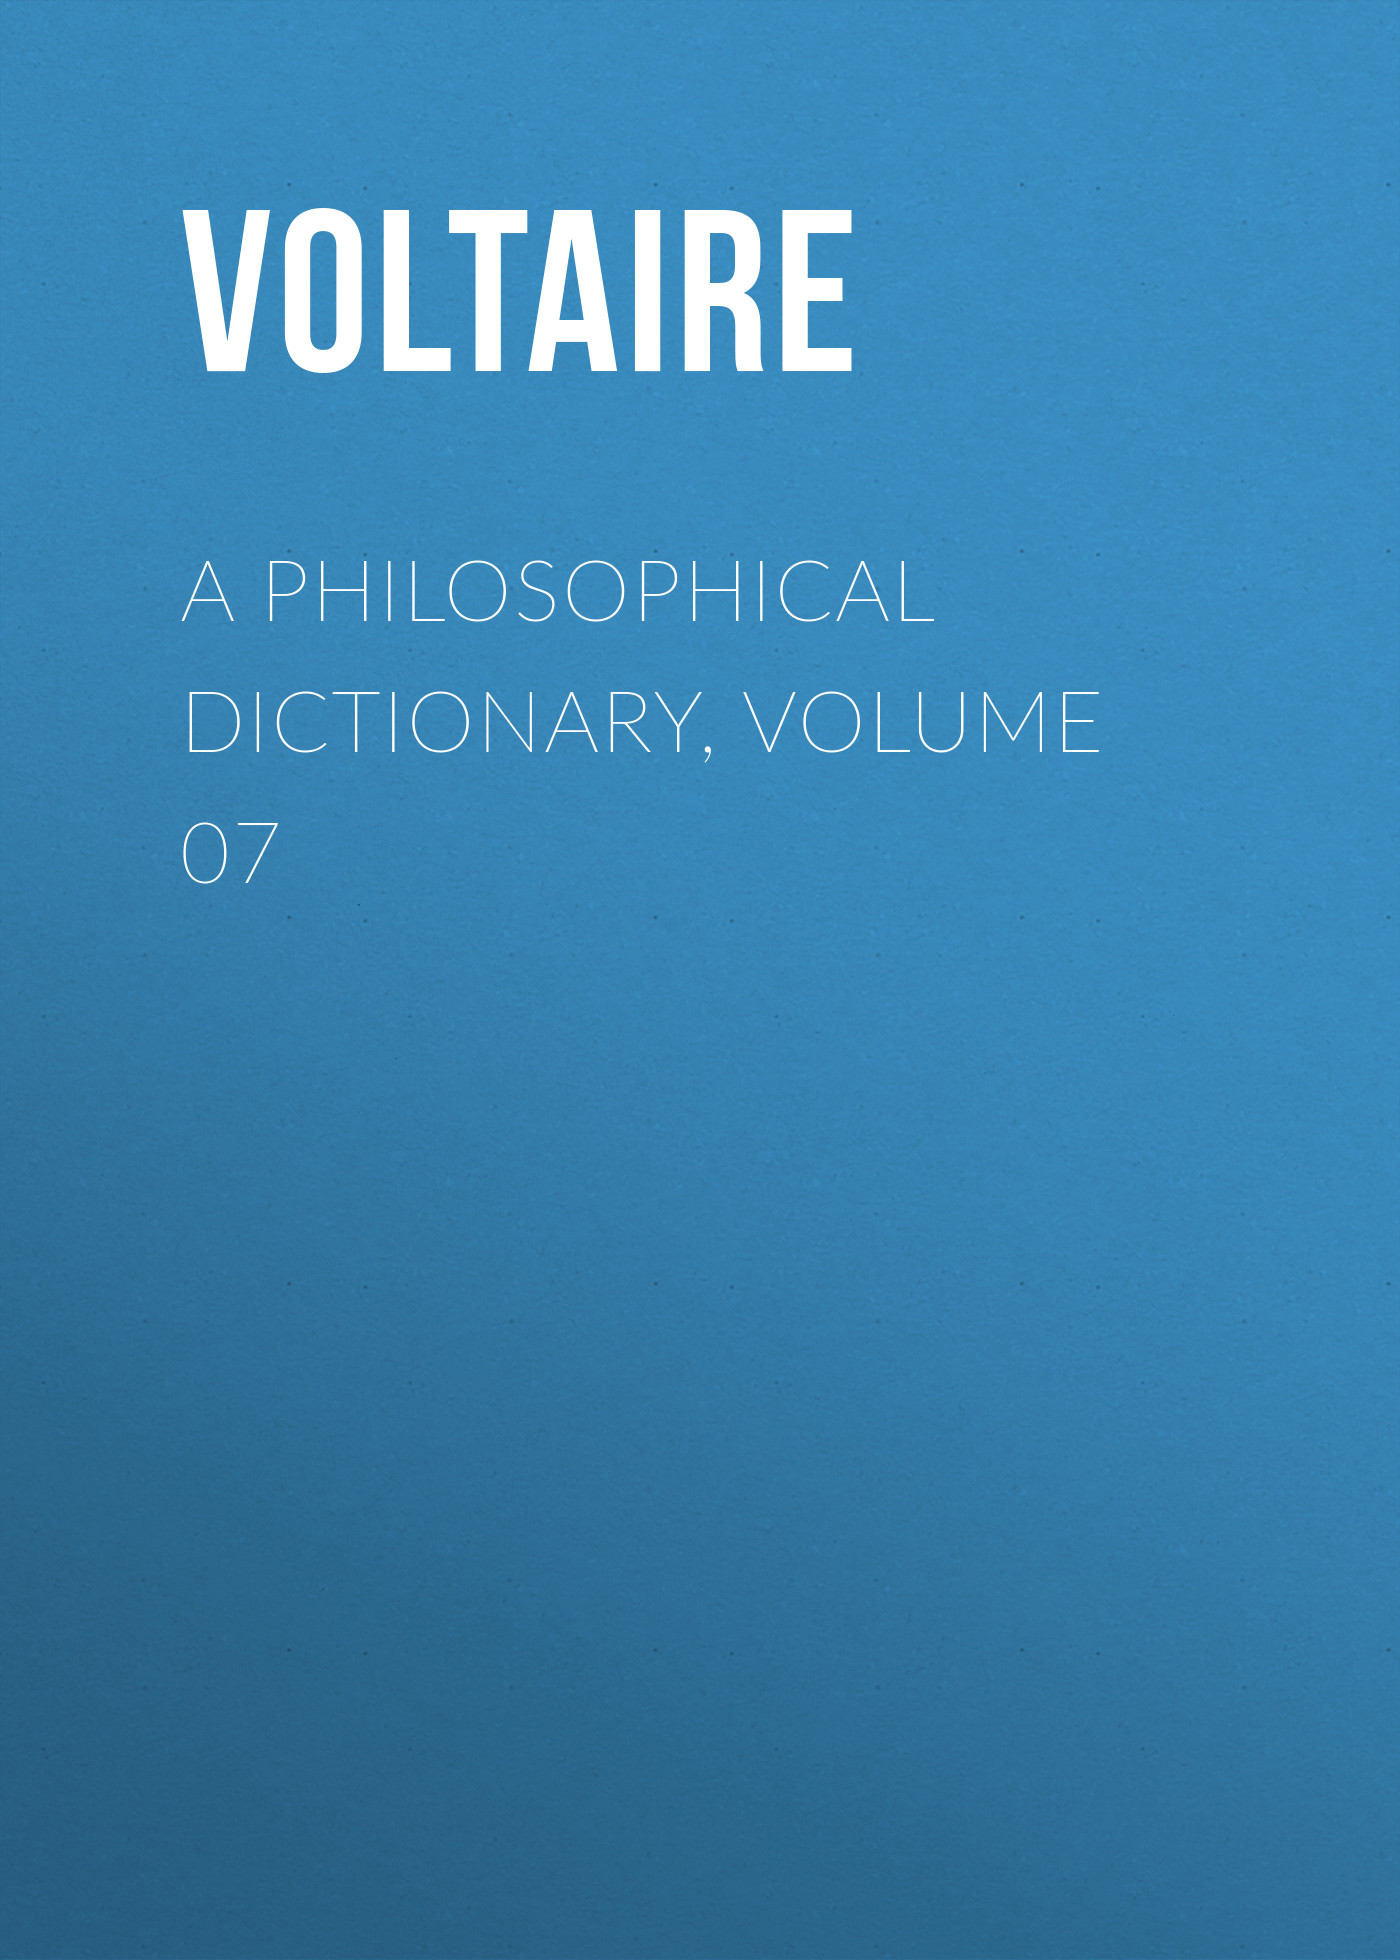 Книга A Philosophical Dictionary, Volume 07 из серии , созданная  Voltaire, может относится к жанру Философия, Литература 18 века, Зарубежная классика. Стоимость электронной книги A Philosophical Dictionary, Volume 07 с идентификатором 25560860 составляет 0 руб.